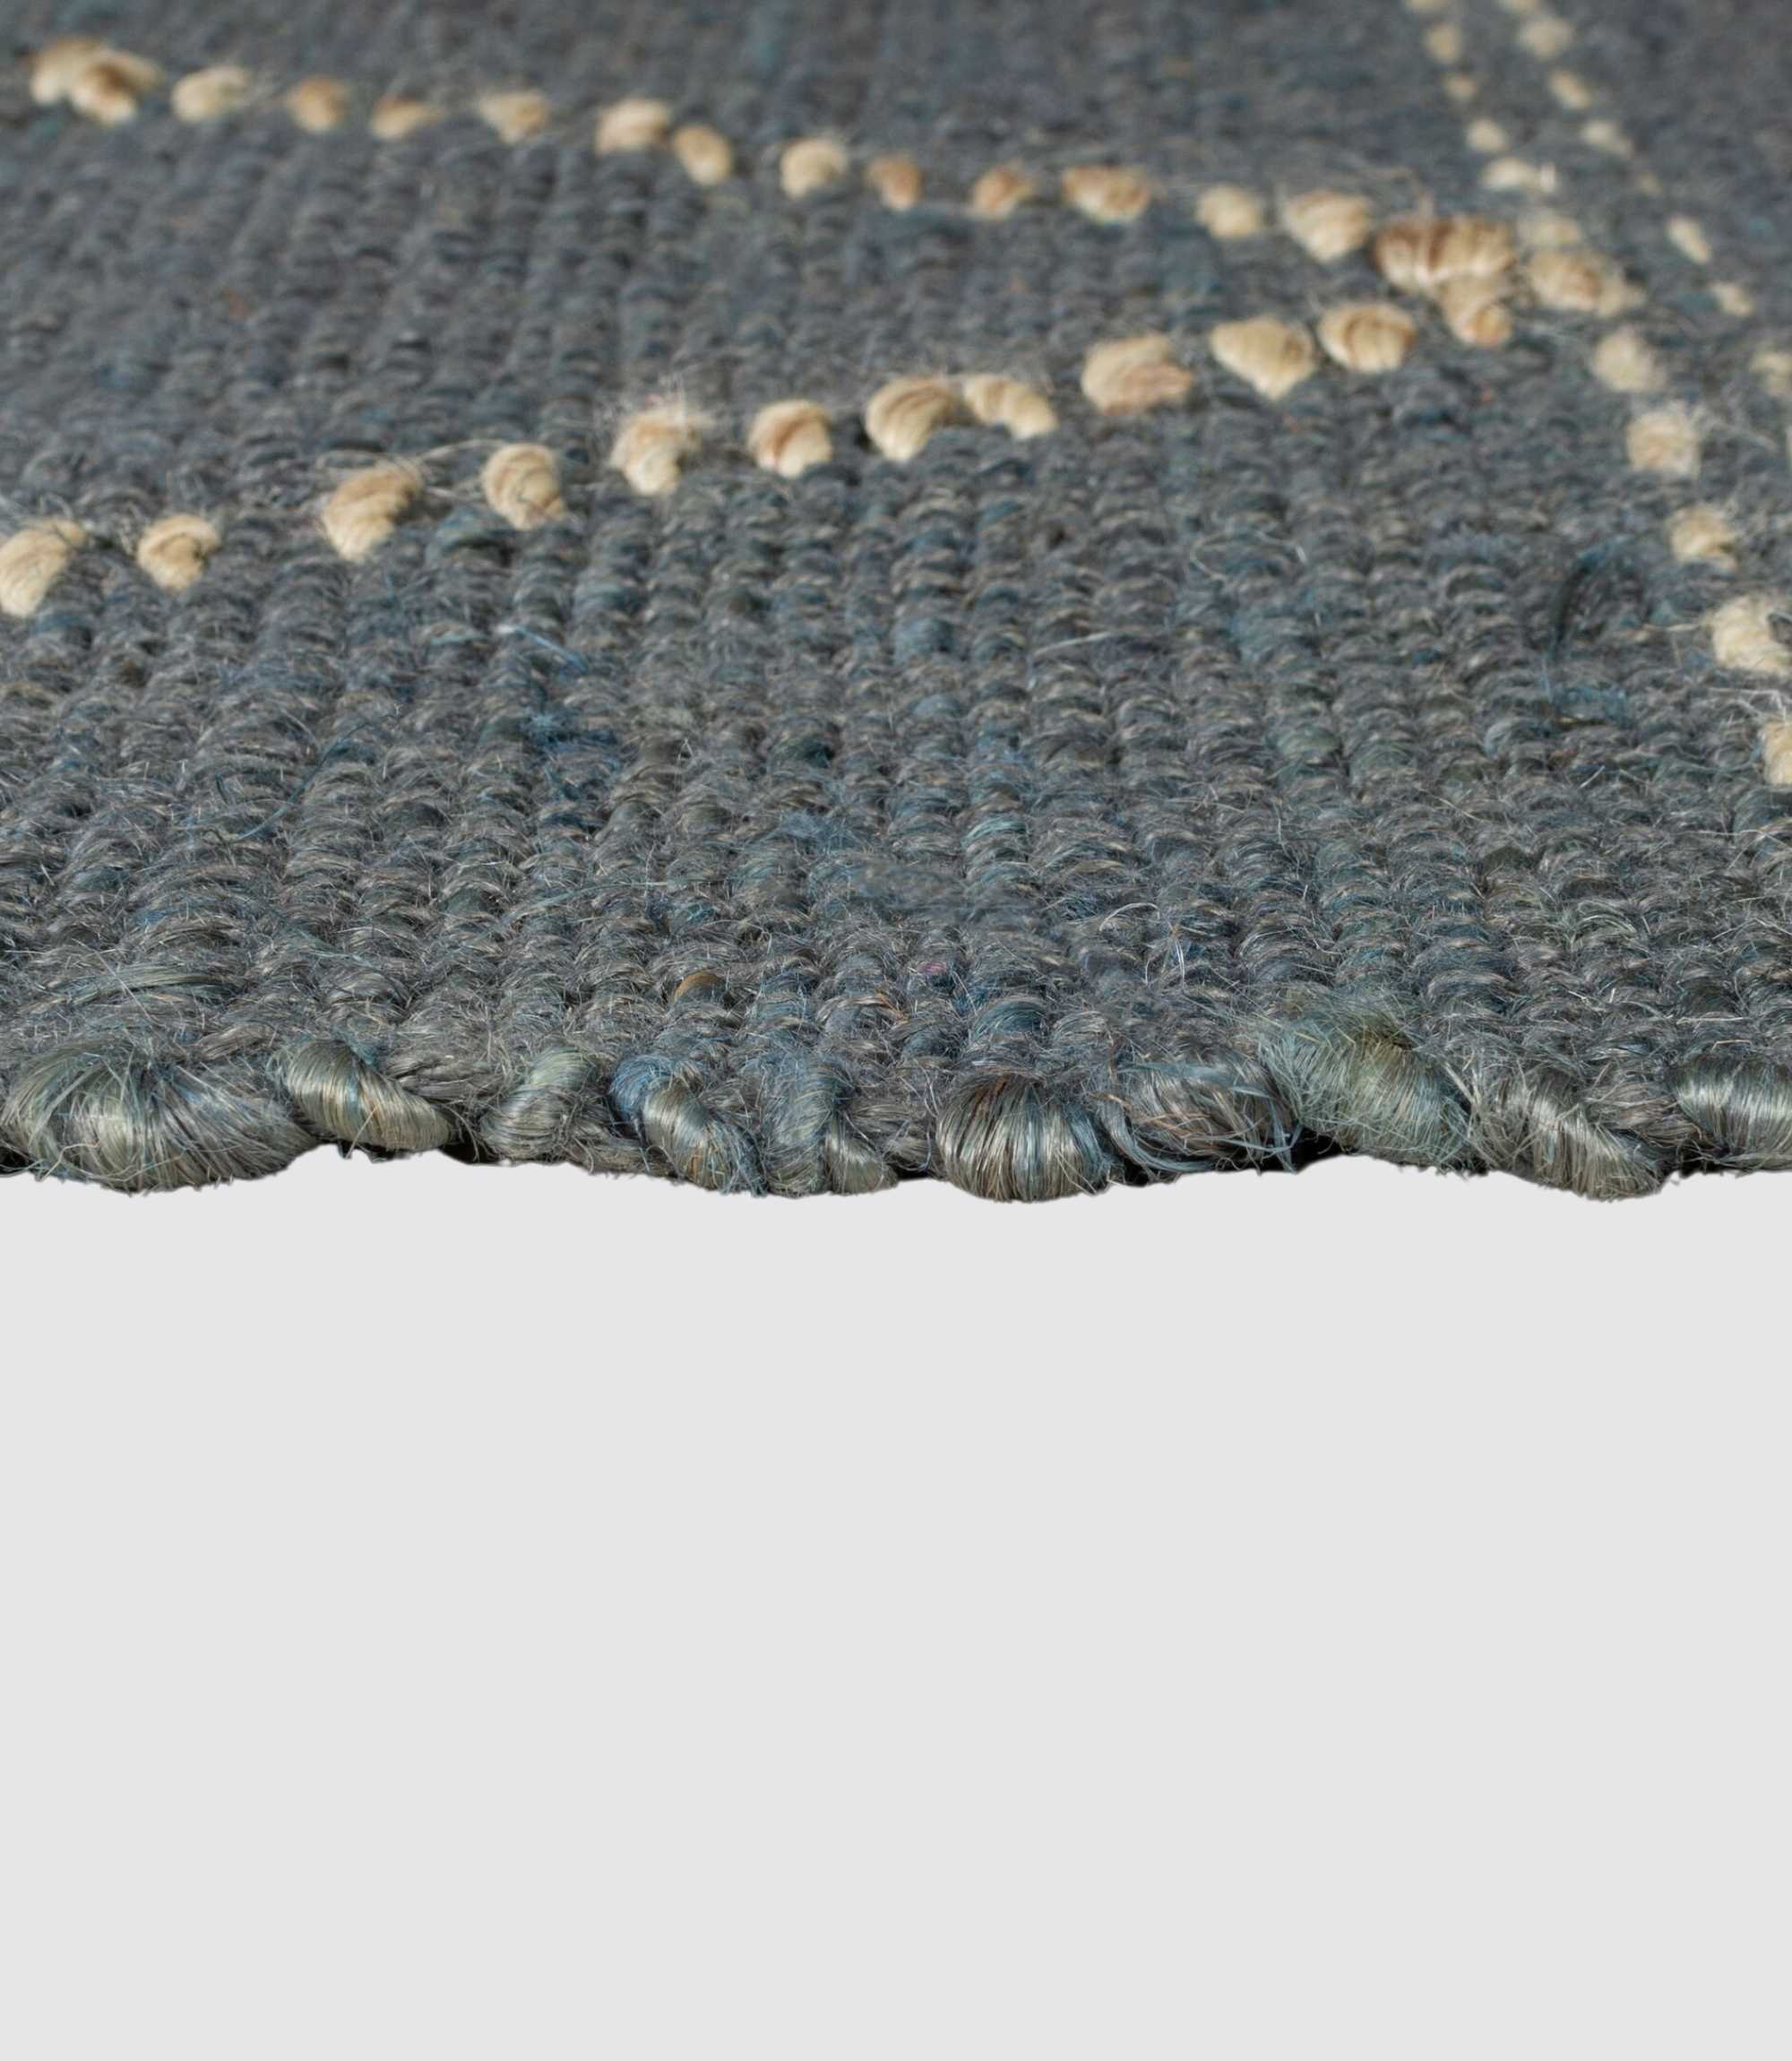 Jute-Teppich Rhombi Handgewebt Blau 160x230